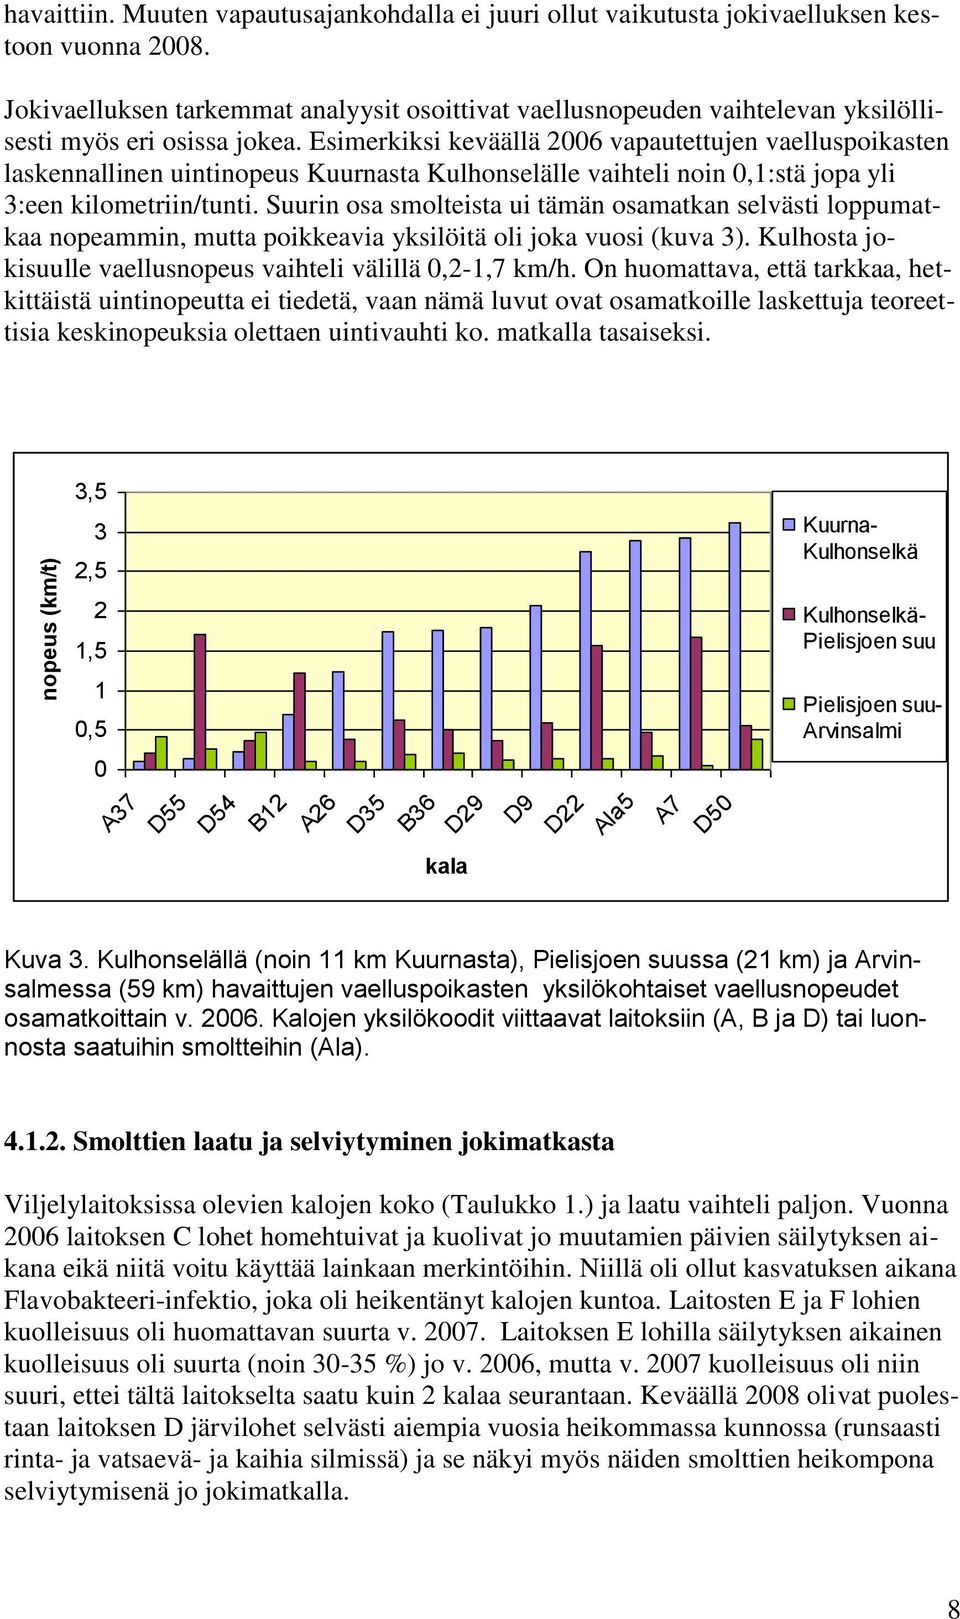 Esimerkiksi keväällä 2006 vapautettujen vaelluspoikasten laskennallinen uintinopeus Kuurnasta Kulhonselälle vaihteli noin 0,1:stä jopa yli 3:een kilometriin/tunti.